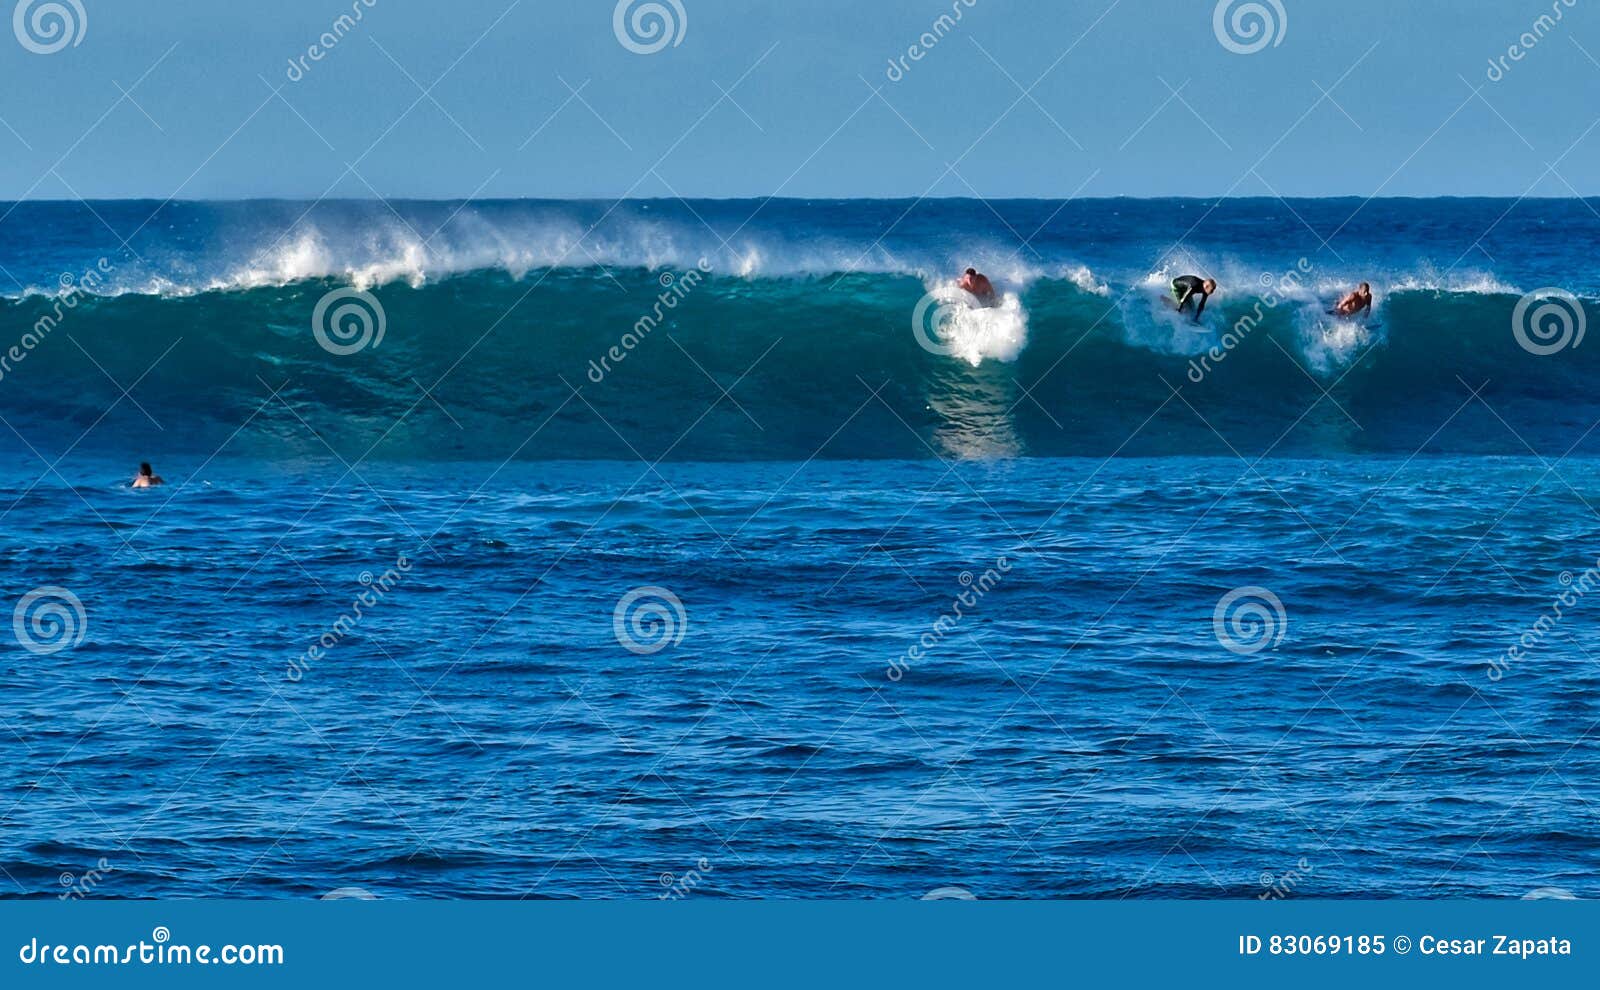 surfers at tubos beach